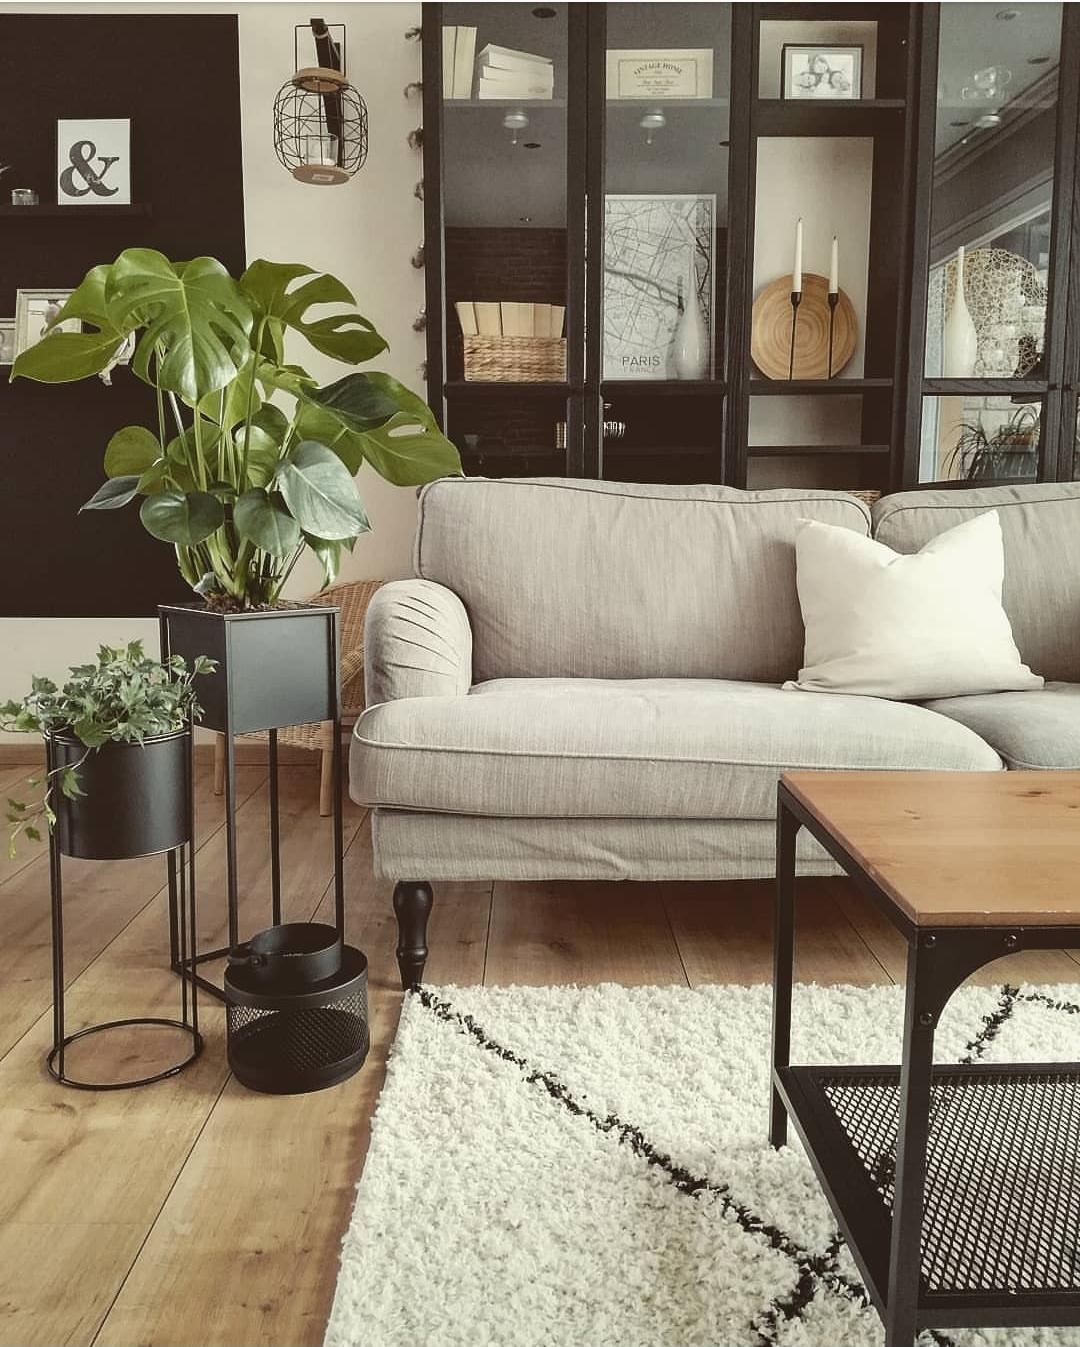 Grünpflanzen gehören für mich einfach zu einem gemütlichen Zuhause dazu 🖤🌱 #pflanzen #couchliebt #bücherregal